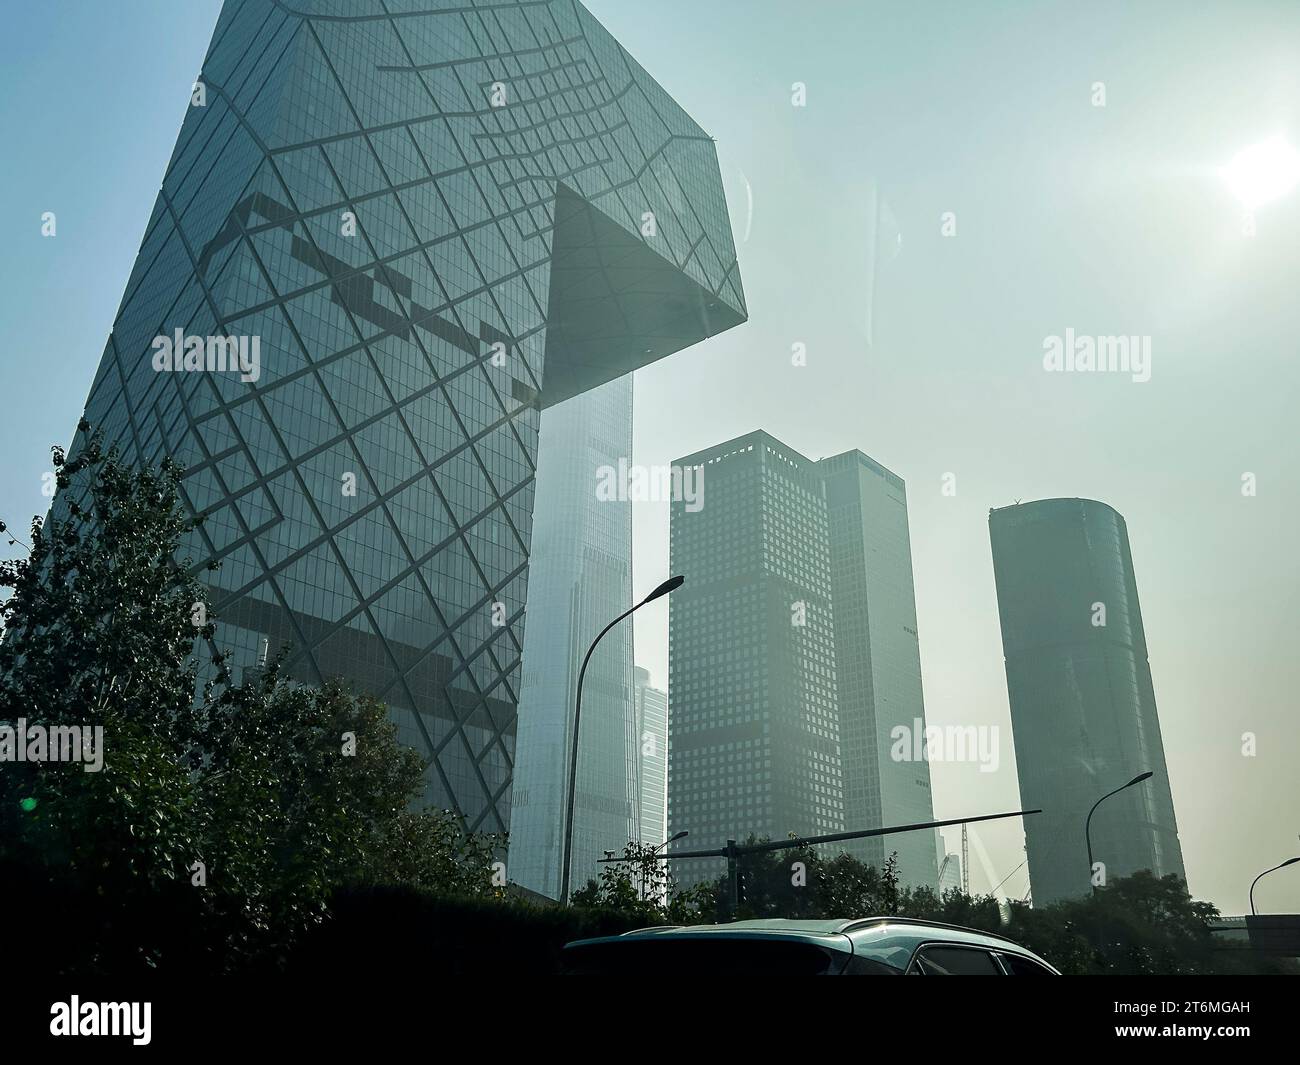 Pechino, Cina, Vista generale, edifici, torri, quartiere degli affari del centro, architettura moderna, inquinamento atmosferico Foto Stock